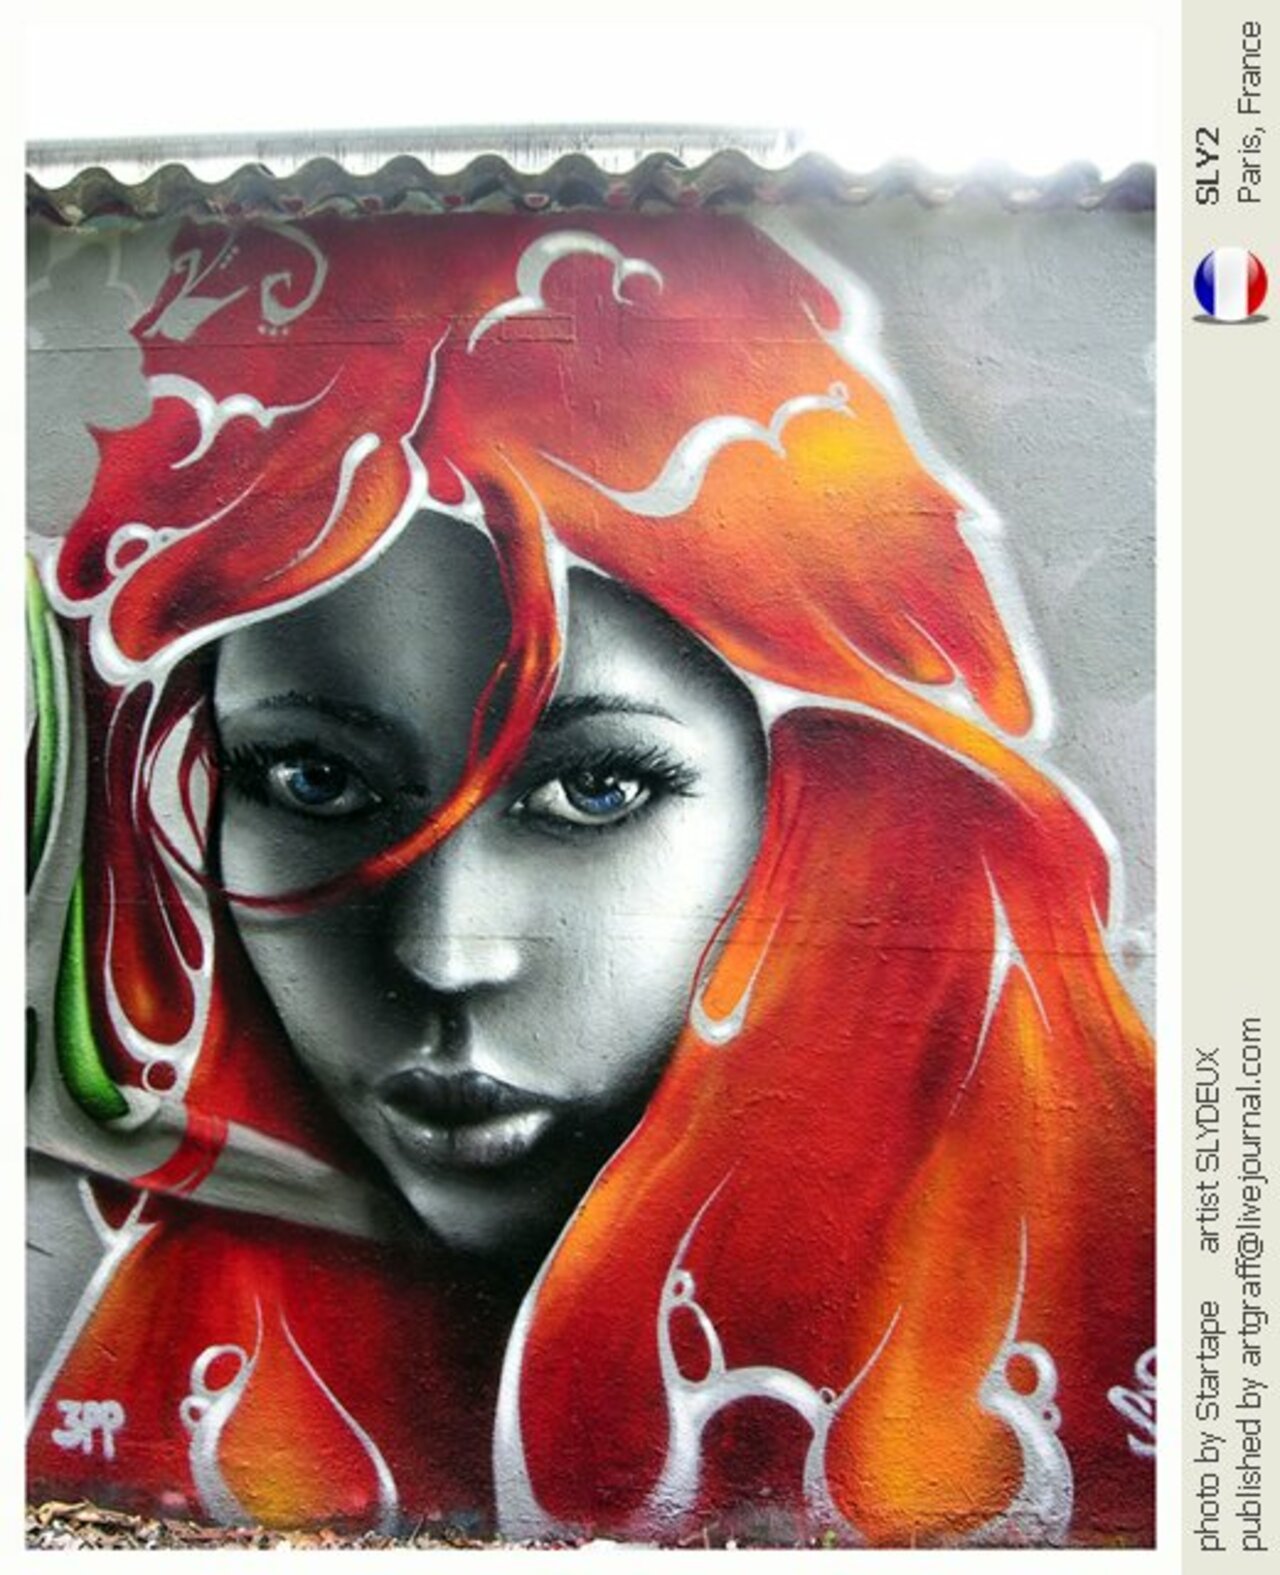 ... like a beautiful lady... in red. Art by Sly2 #StreetArt #Art #Beauty #Red #Graffiti #Mural #UrbanArt #Paris https://t.co/lX3YOWMxSj